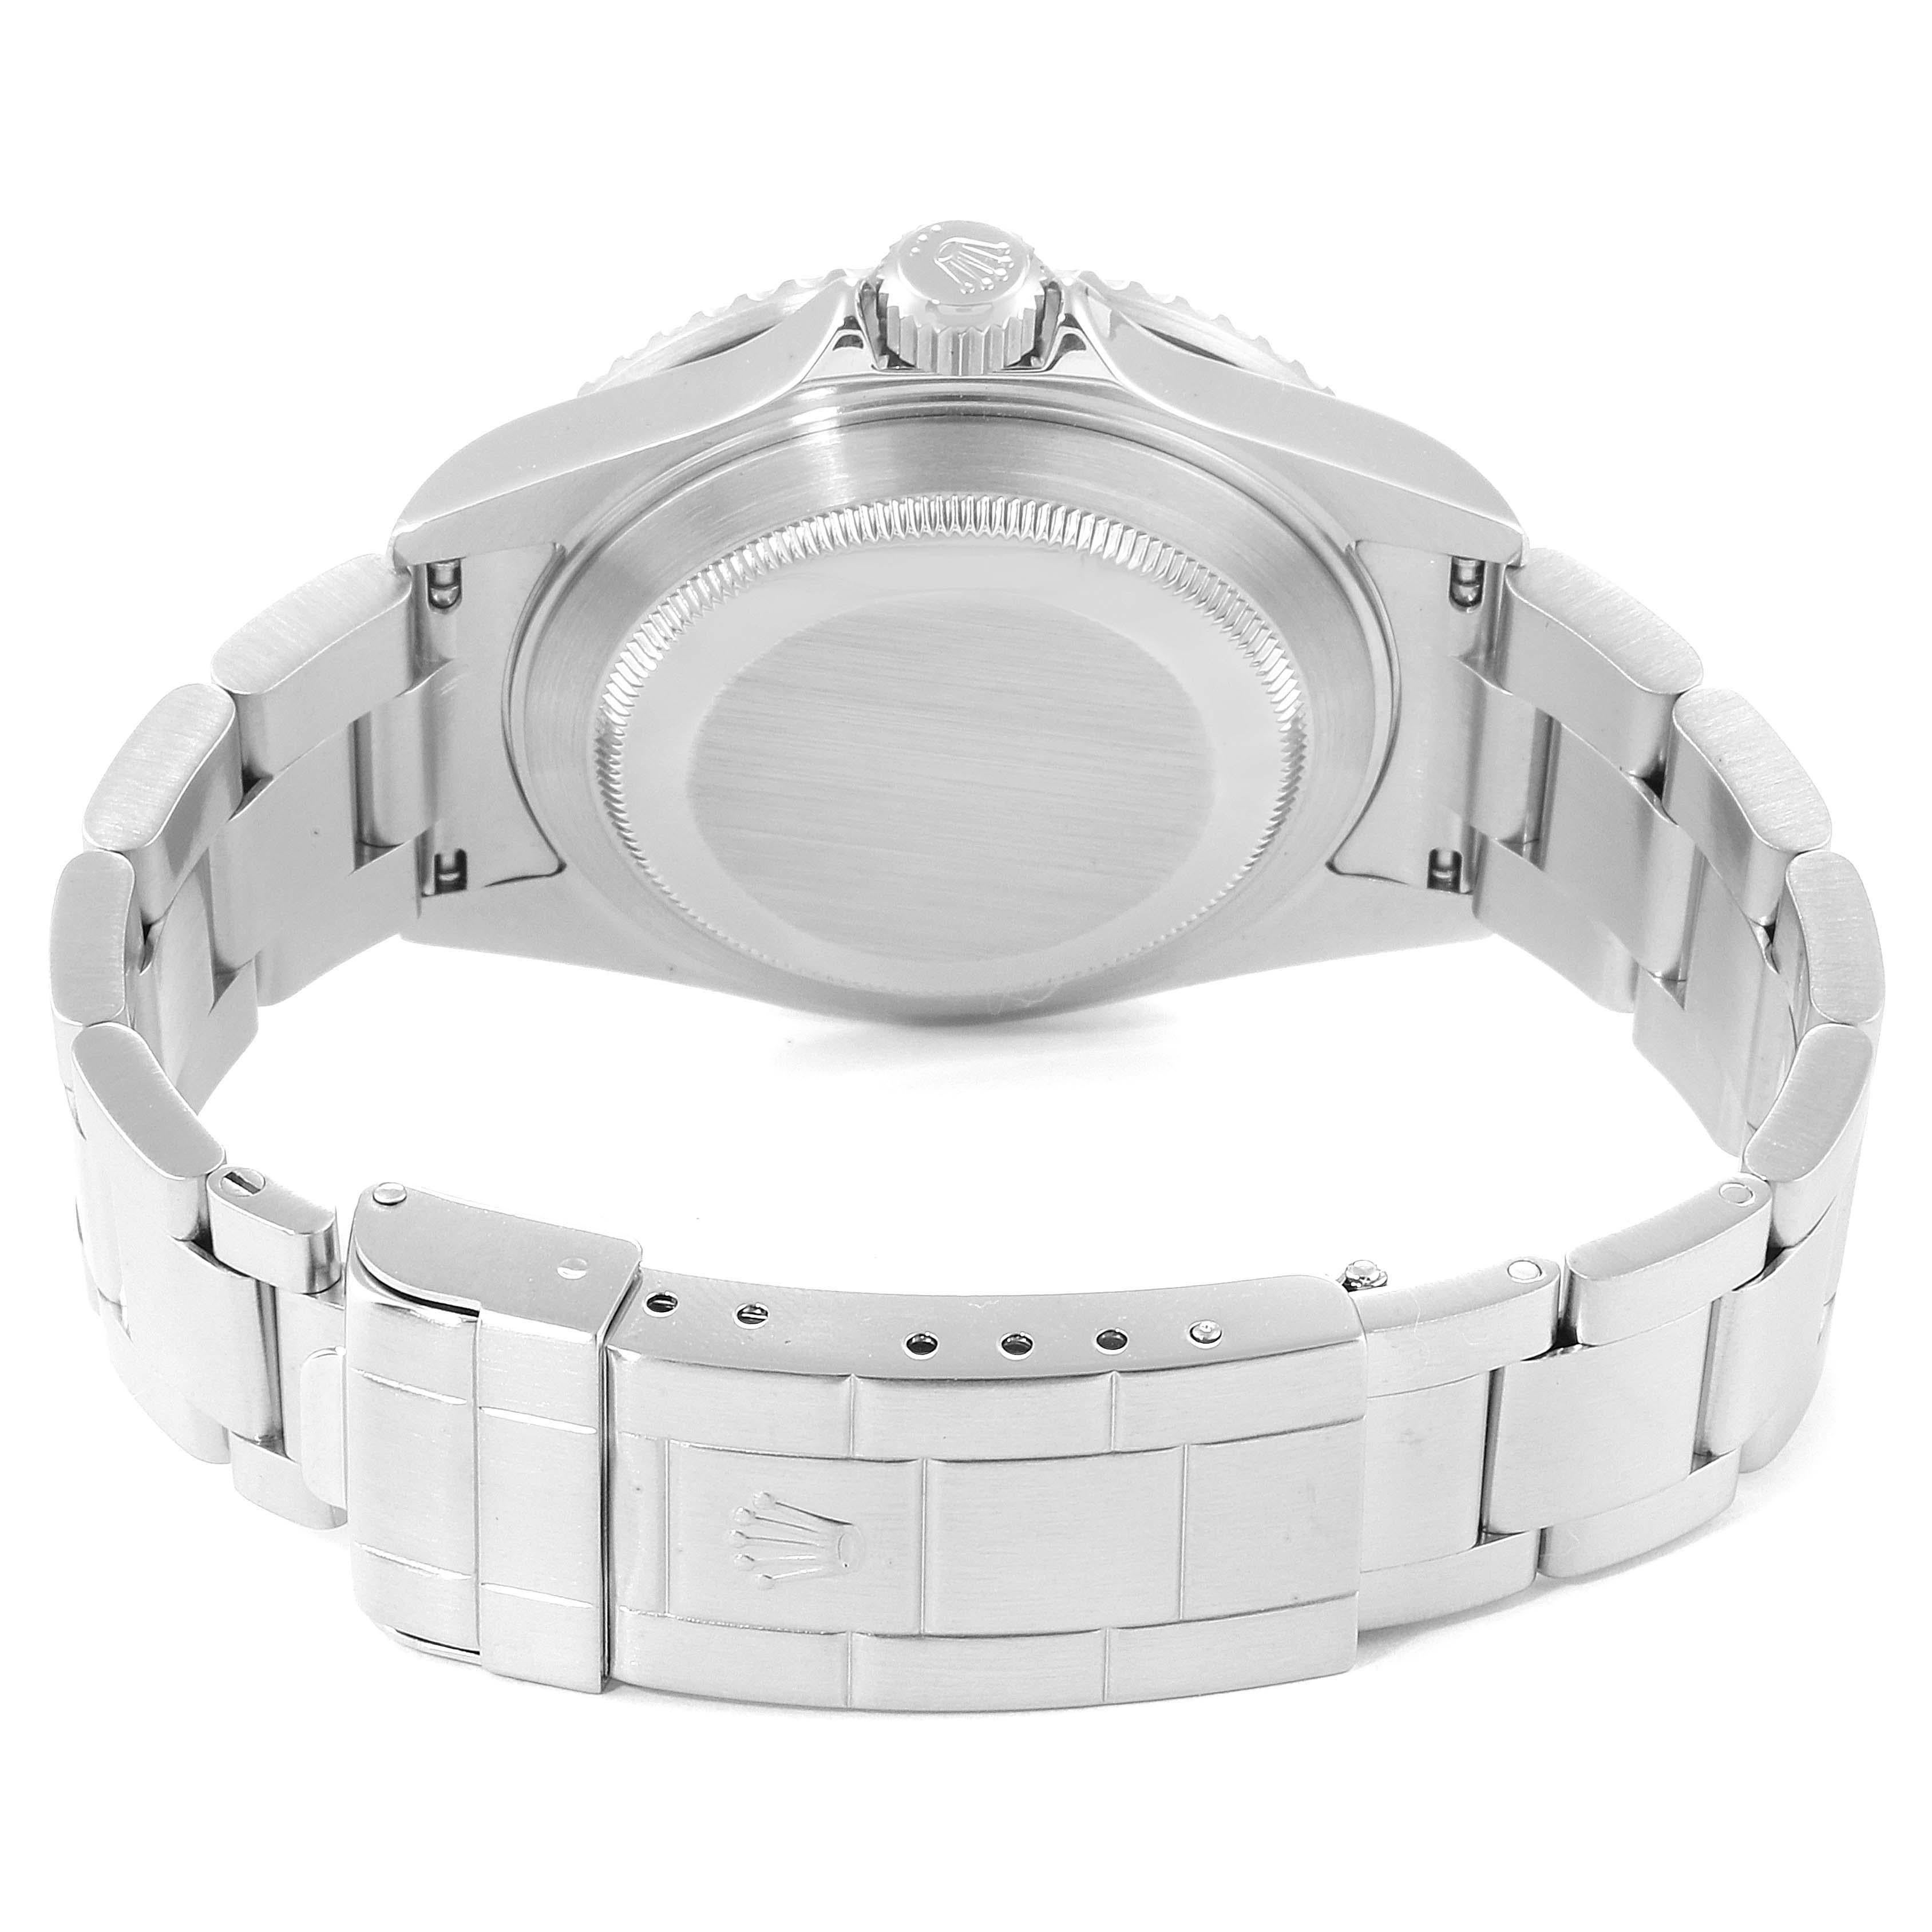 Rolex Submariner Date Stainless Steel Men's Watch 16610 3